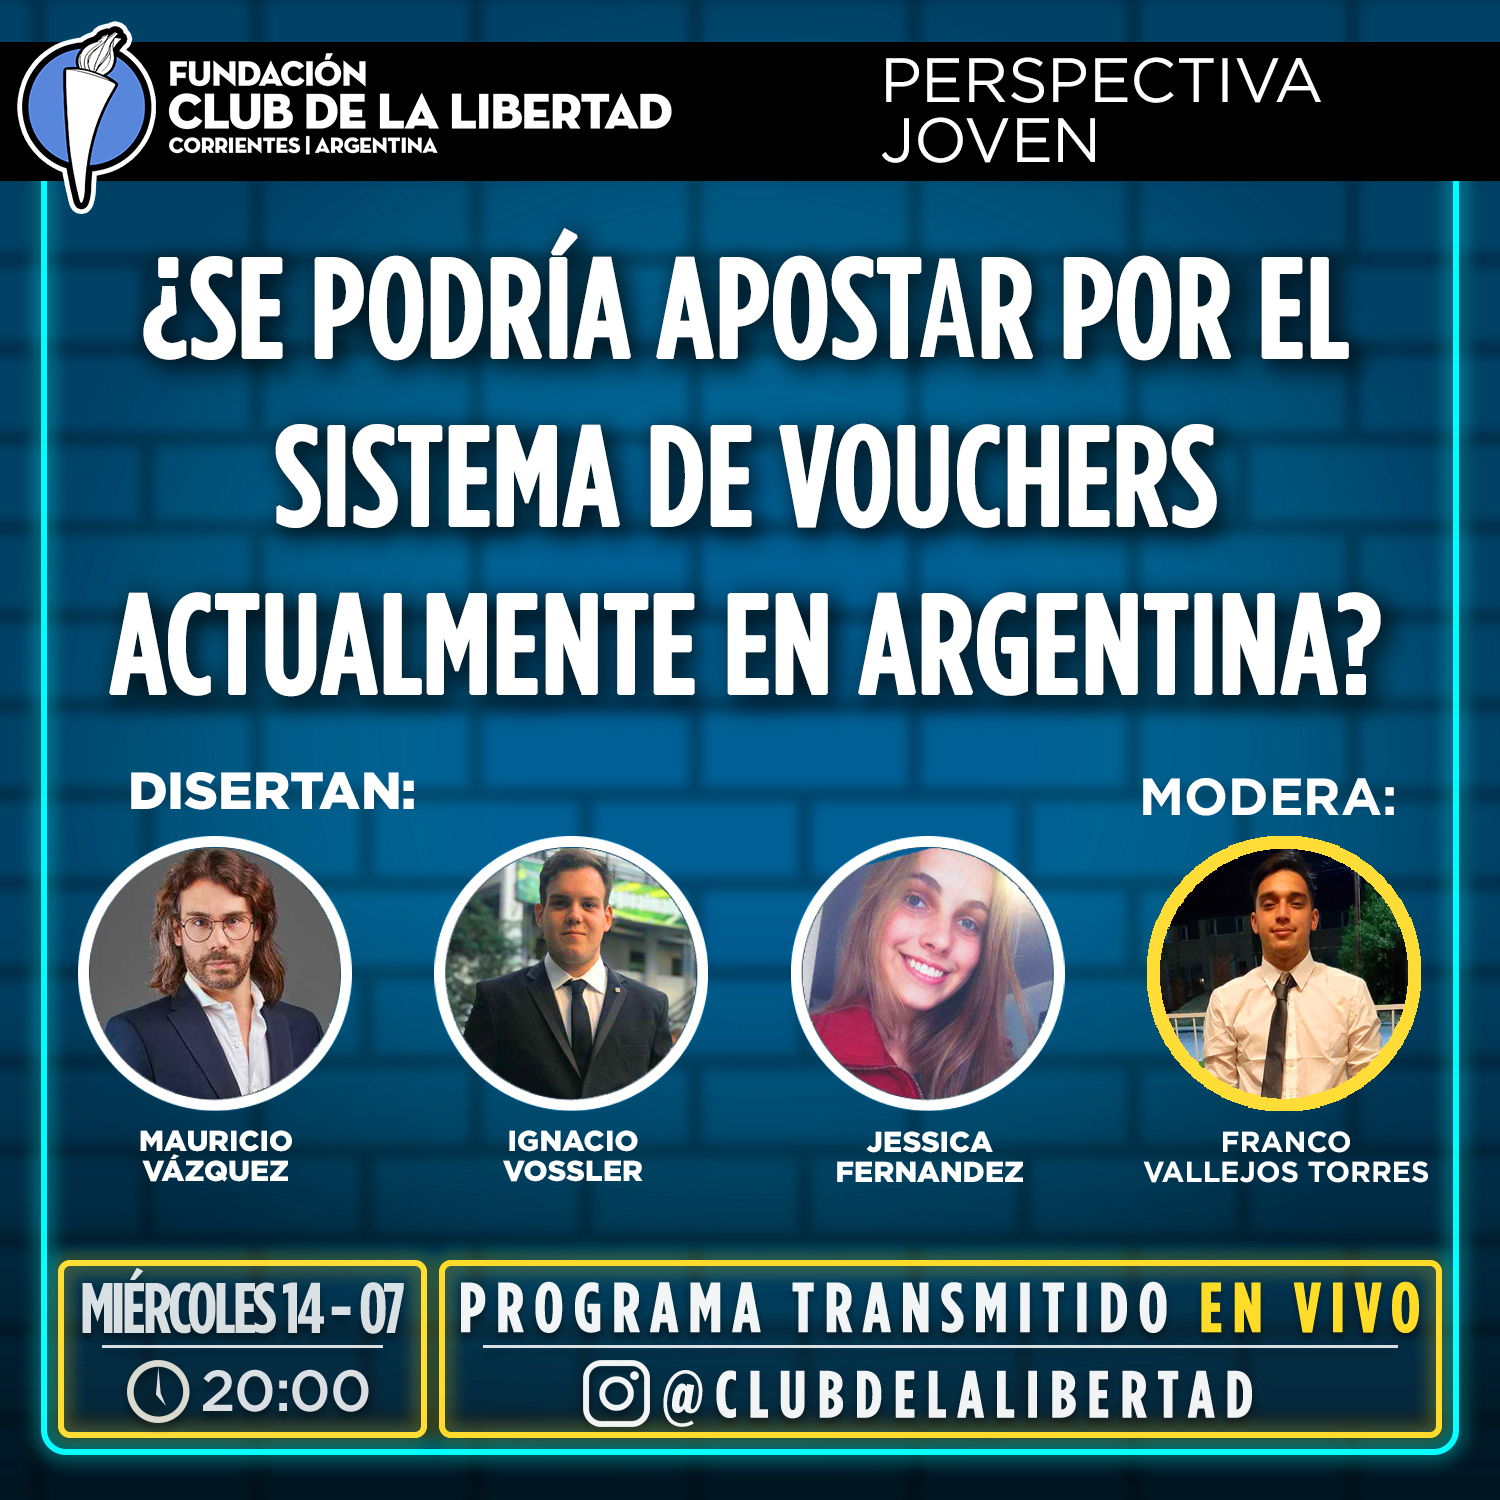 En este momento estás viendo Perspectiva Joven – ¿Se podría apostar por el sistema de vouchers actualmente en la Argentina?